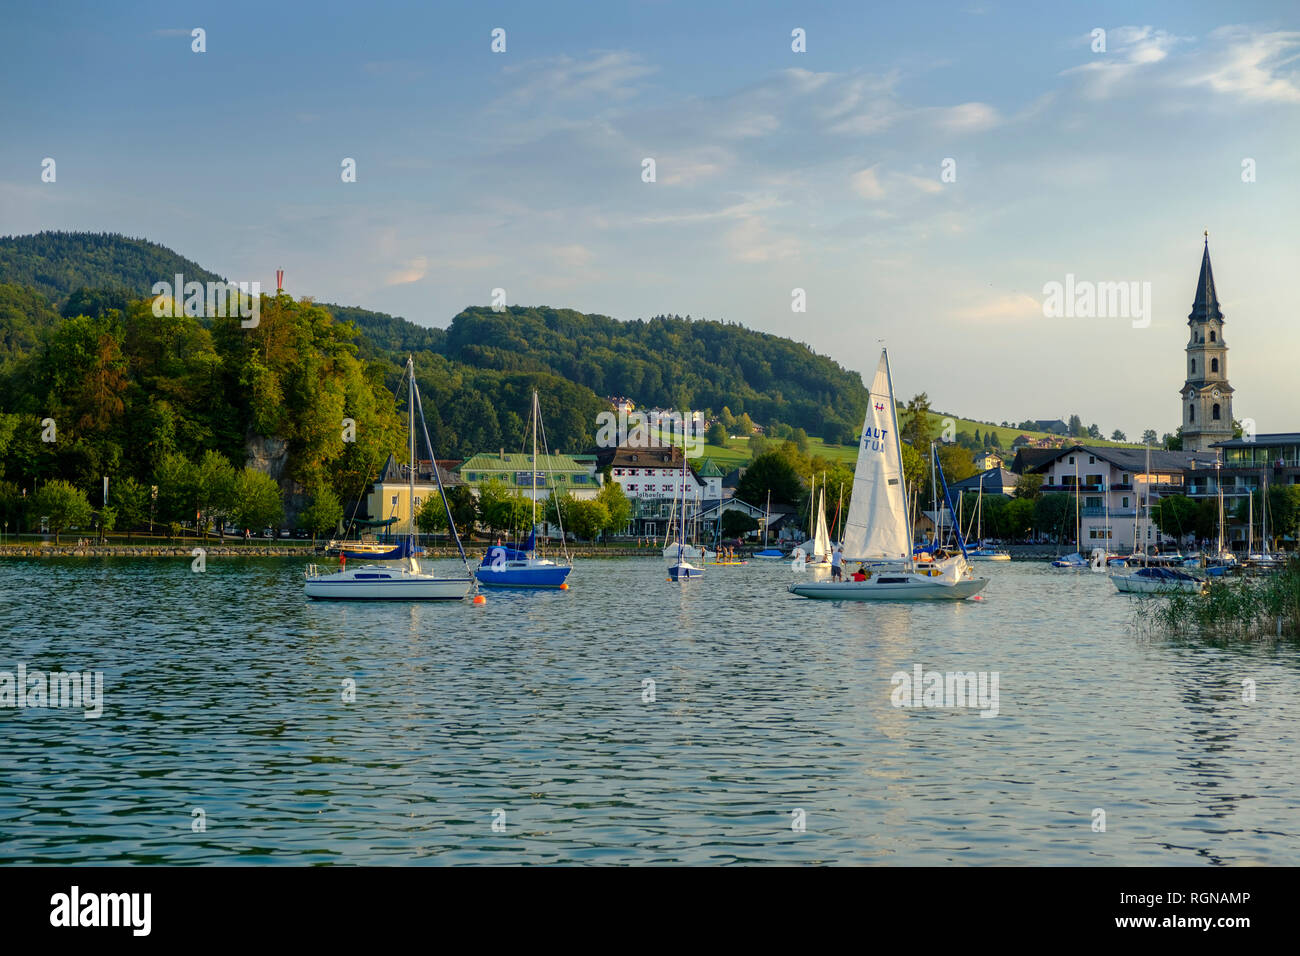 Austria, Land Salzburg, Flachgau, Mattsee, vista del villaggio con il lago, chiesa collegiata in background Foto Stock